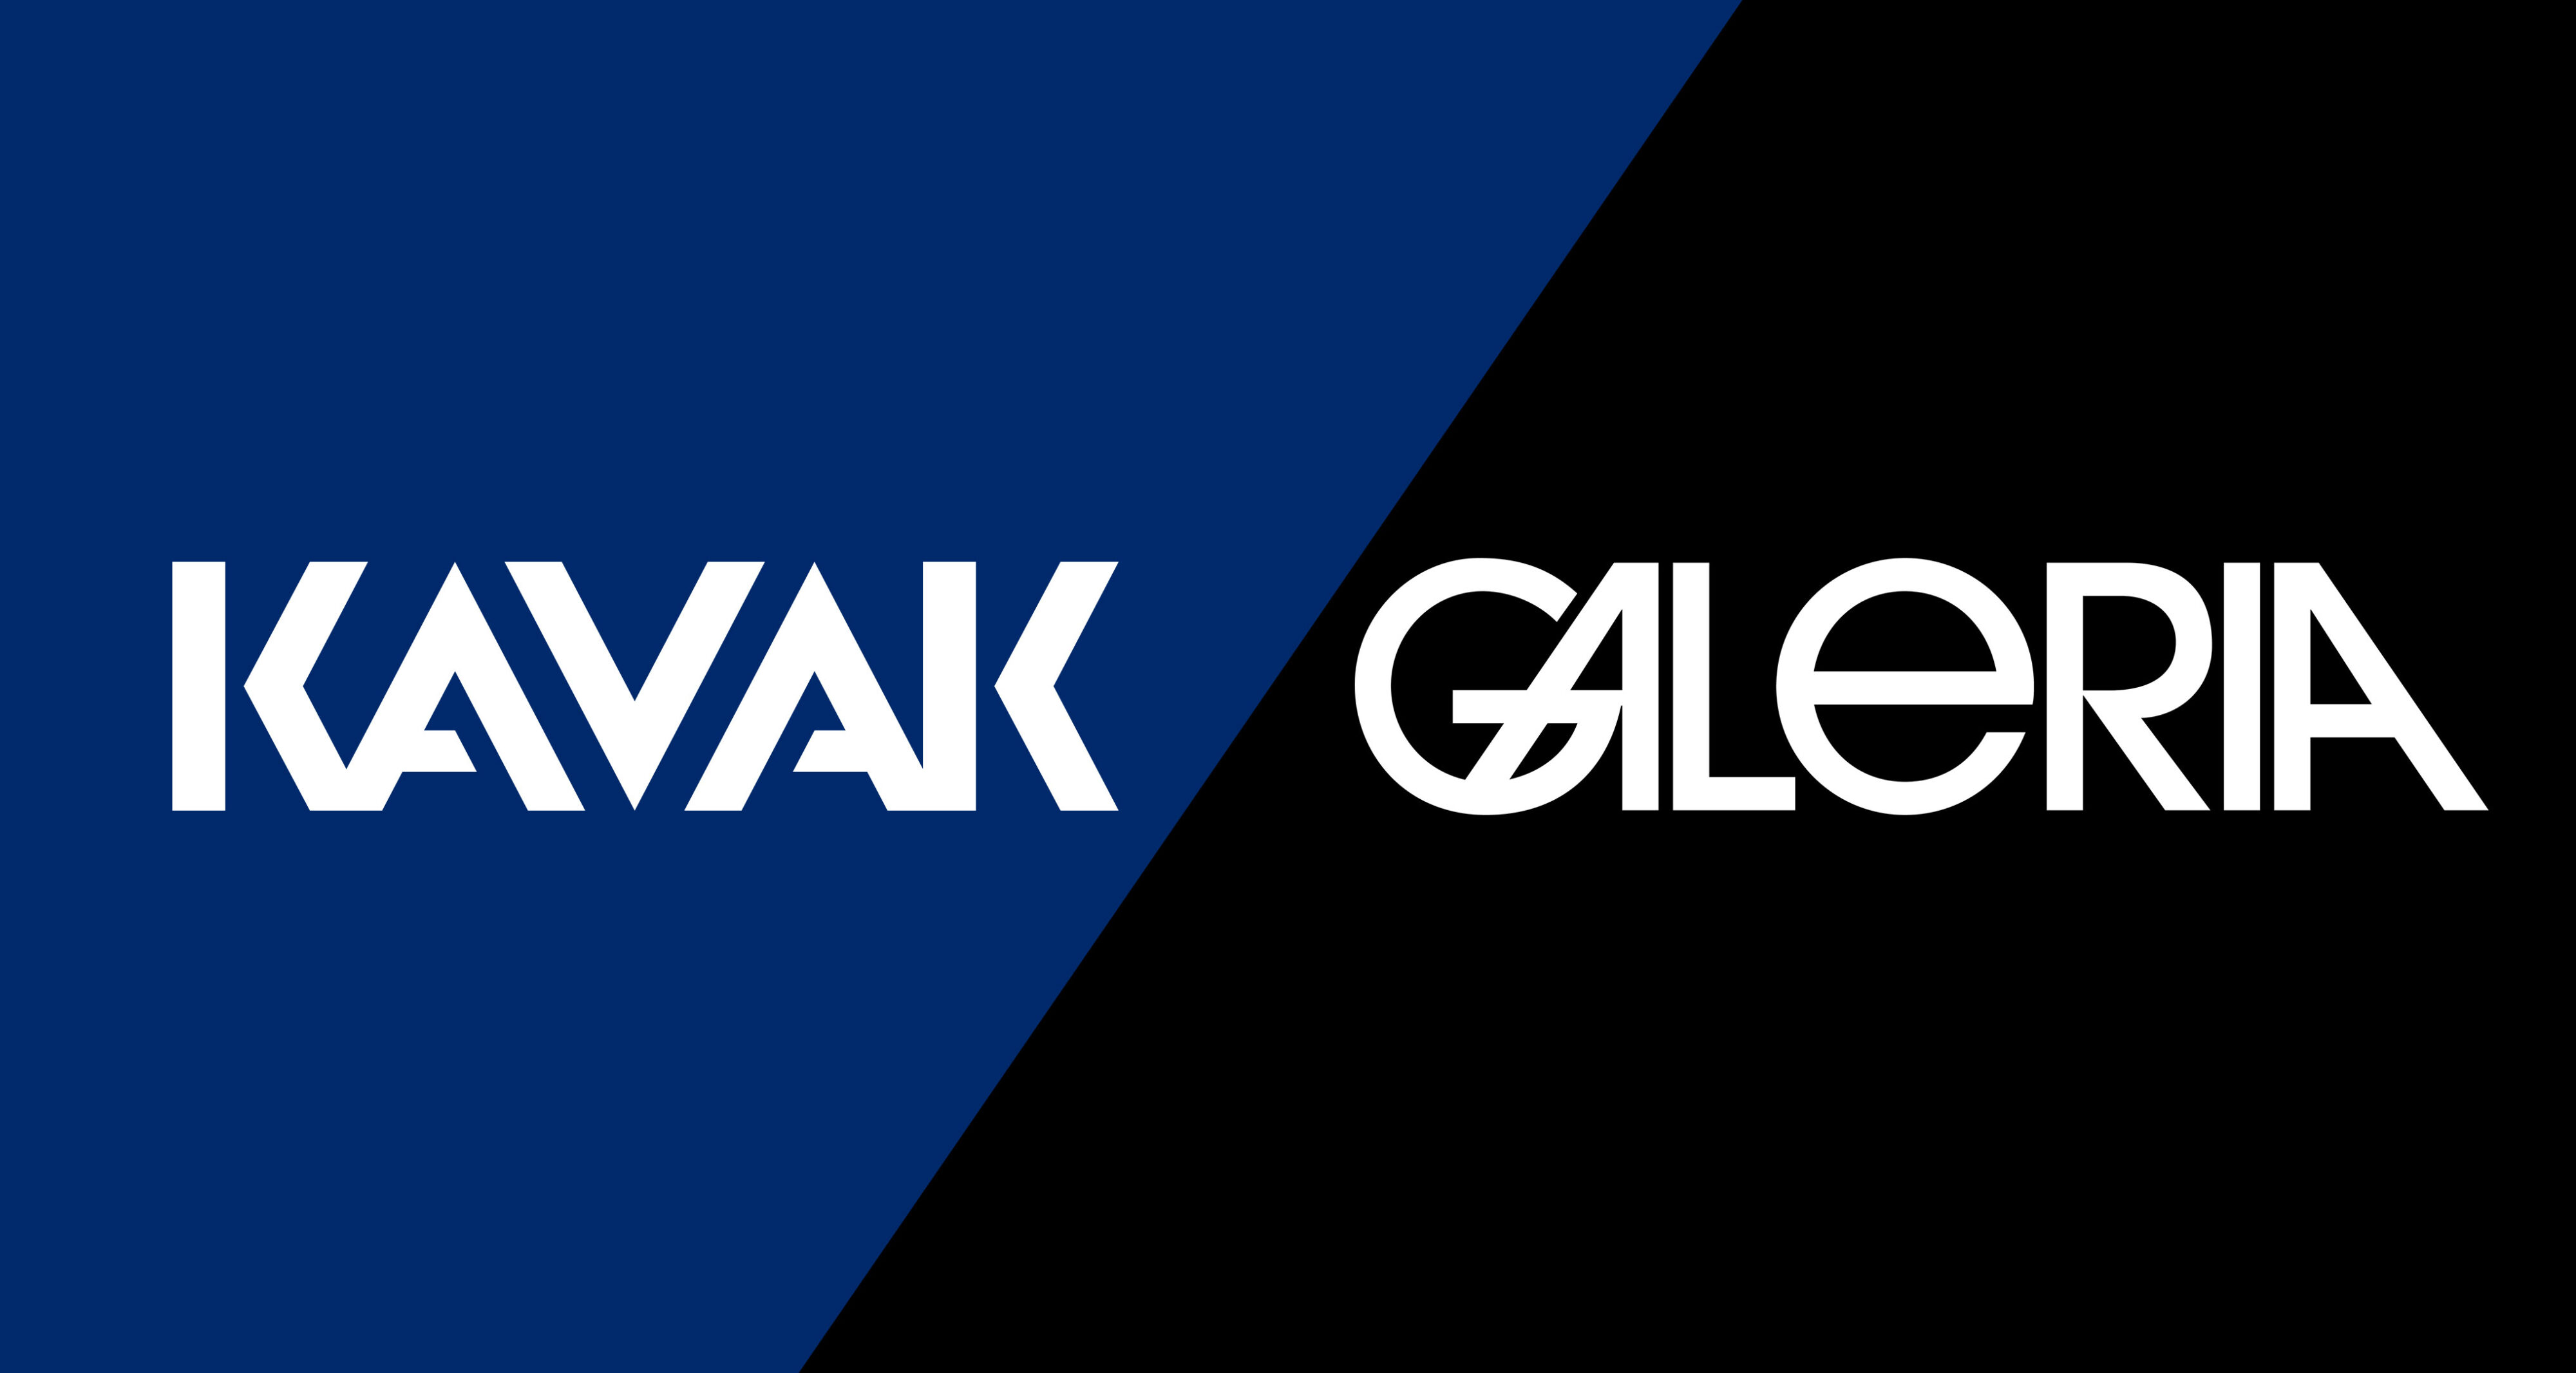 GALERIA é a nova agência de publicidade da Kavak no Brasil